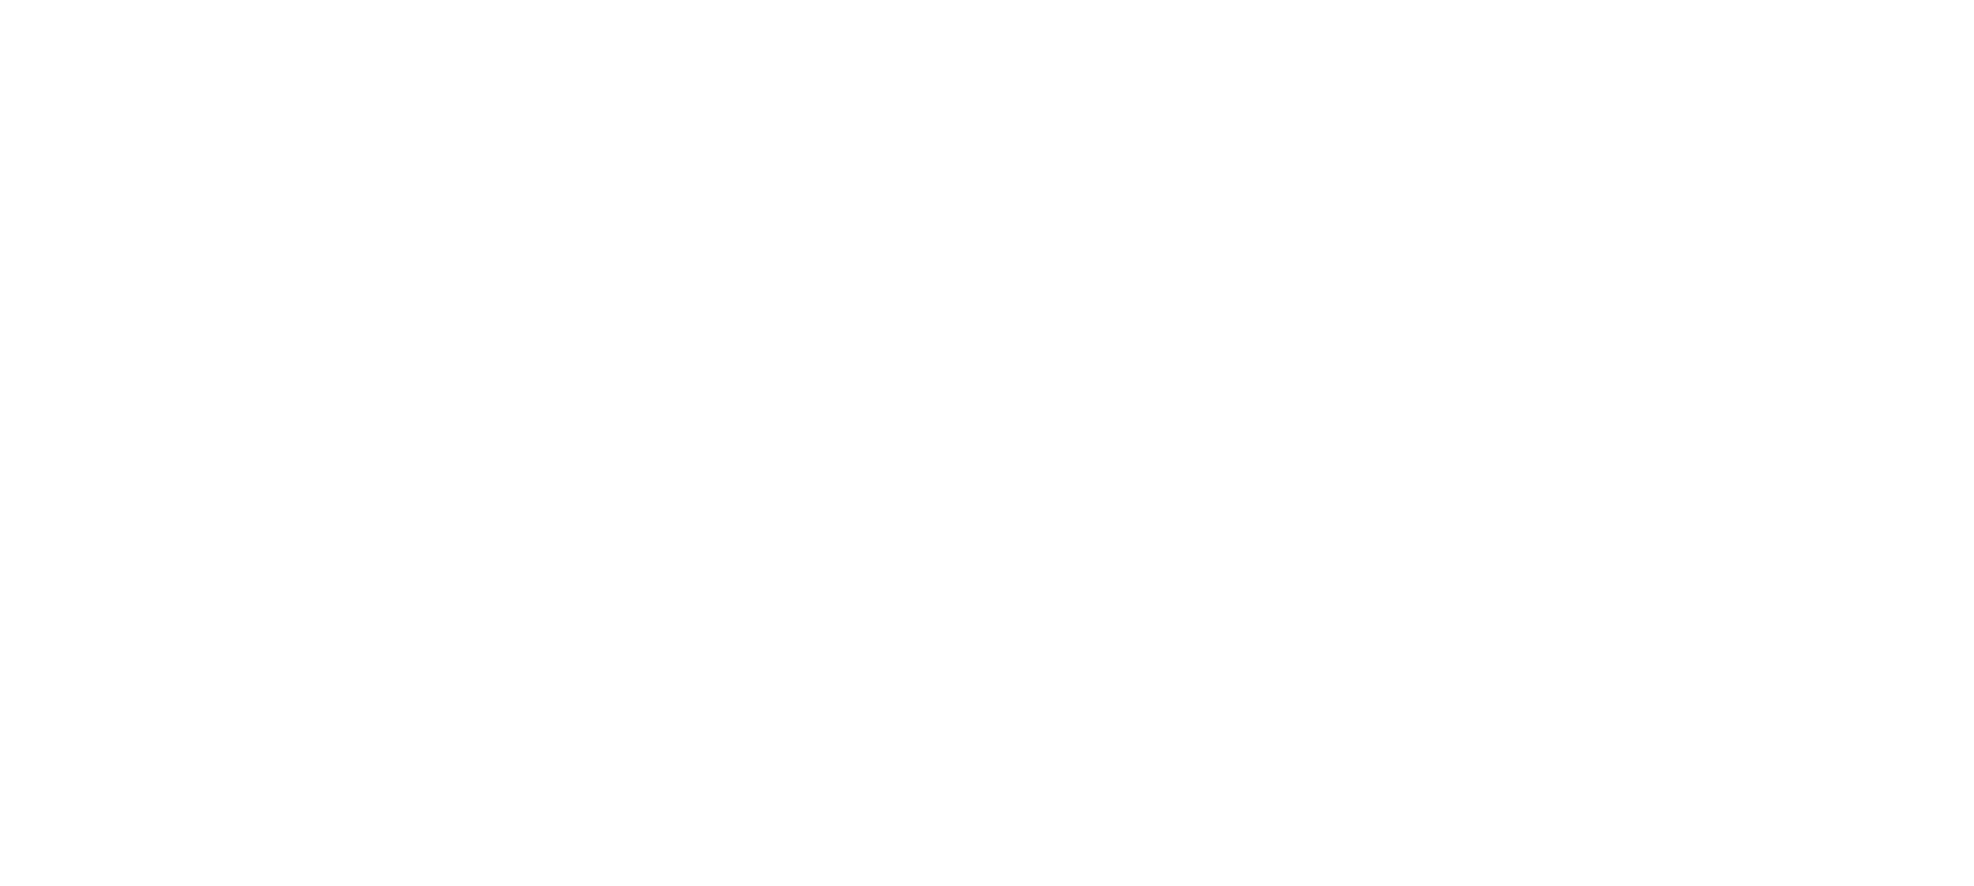 Réservation Saison 23-24 Conservatoire Saint-Priest